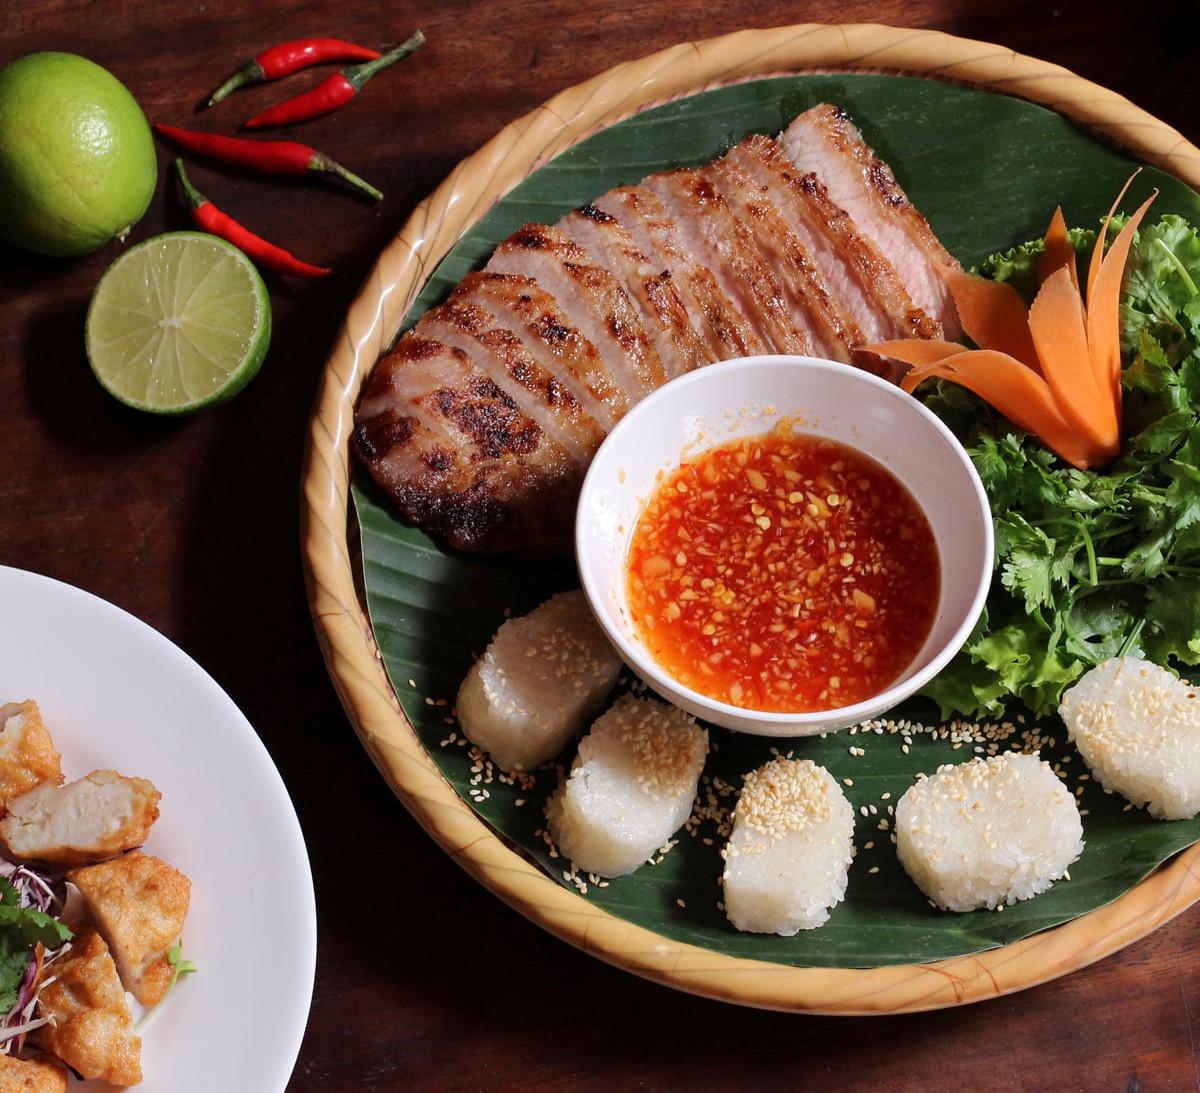 Danh sách nhà hàng Quảng Bình mà bạn nhất định phải thử 10